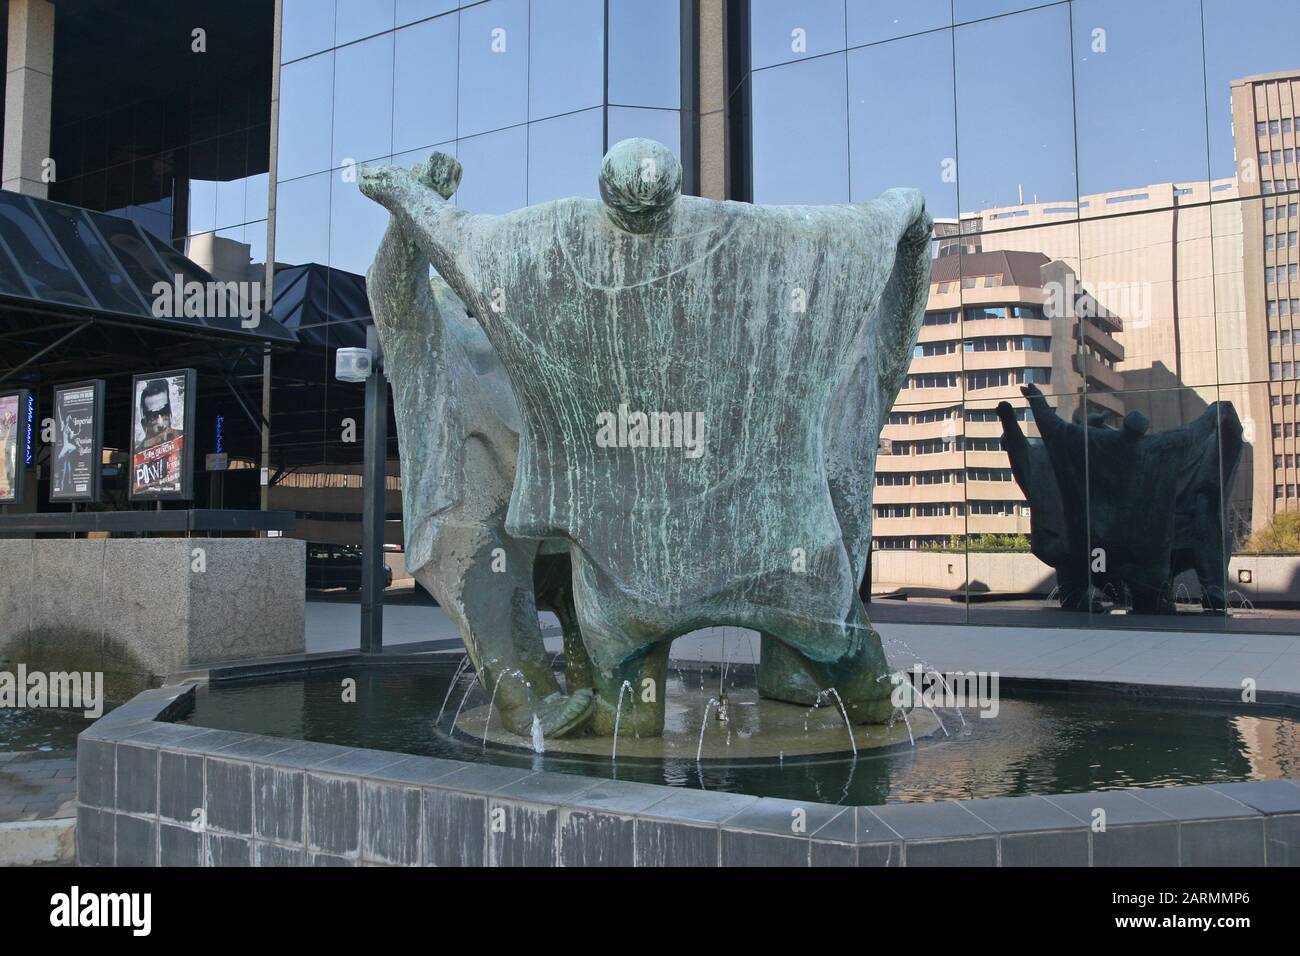 Statuen vor dem Joburg Theatre nannten Die Playmakers von Ernest Ullman, Braamfontein, Johannesburg, Gauteng, Südafrika. Stockfoto